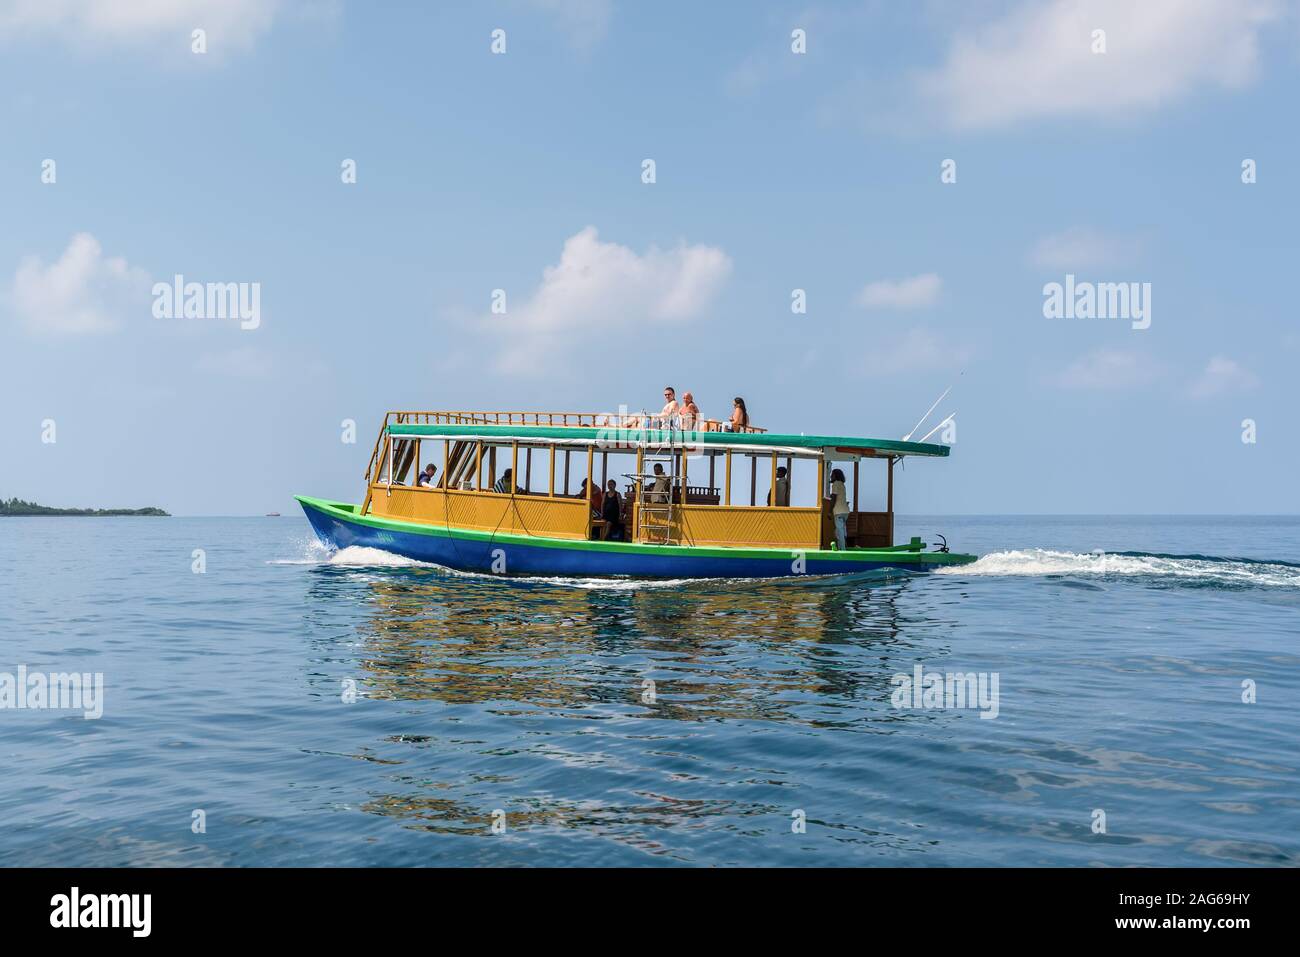 Huraa, Maldive - Novembre 19, 2017: imbarcazione a motore con i turisti floating sulle turchesi acque cristalline dell'Oceano Indiano vicino al Huraa Island, Maldive. Foto Stock